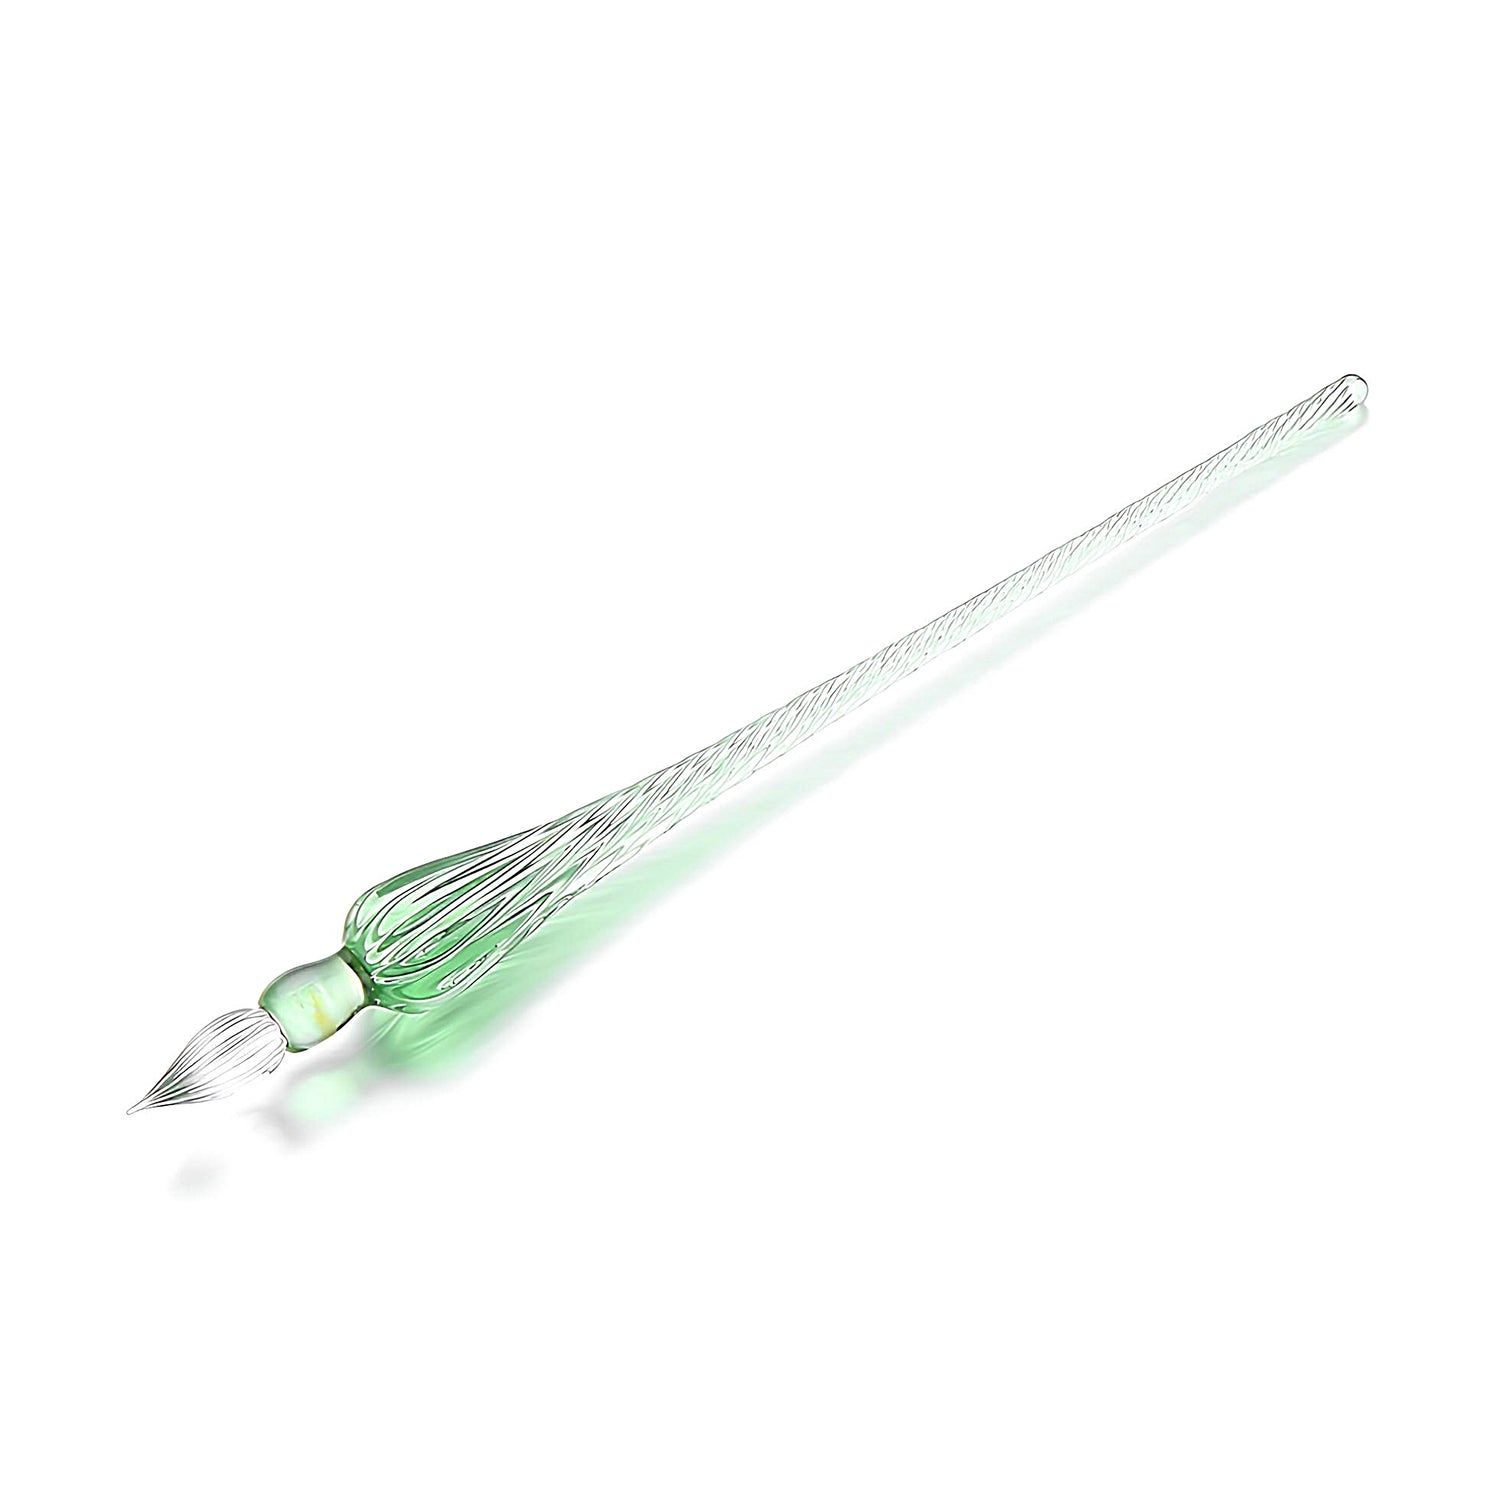 a green glass dip pen